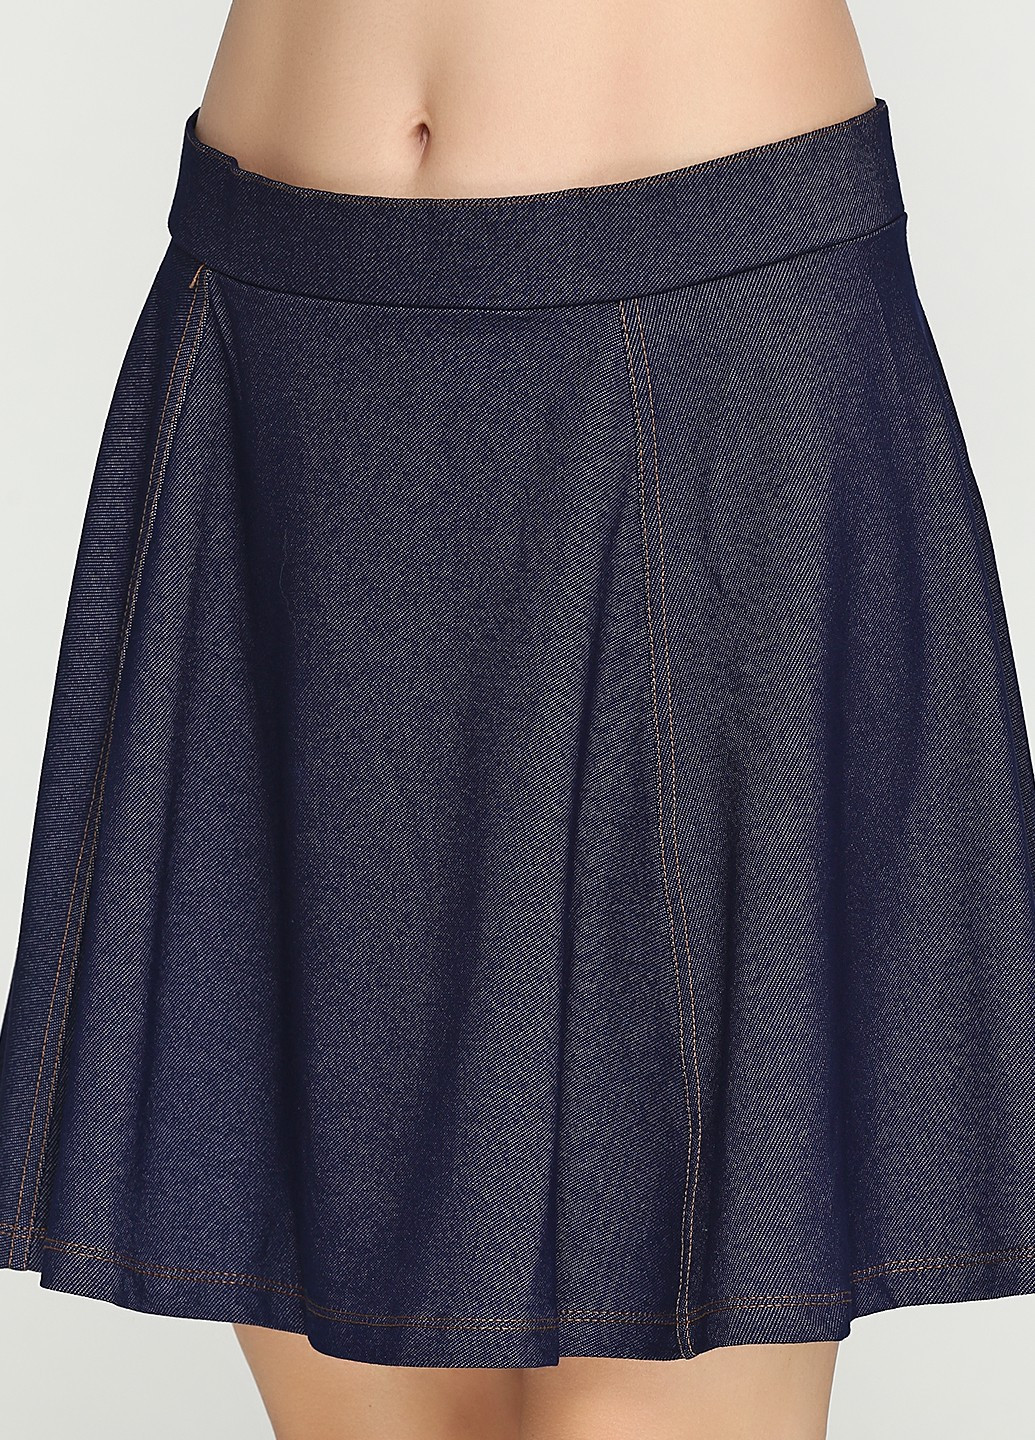 Темно-синяя кэжуал юбка H&M клешированная